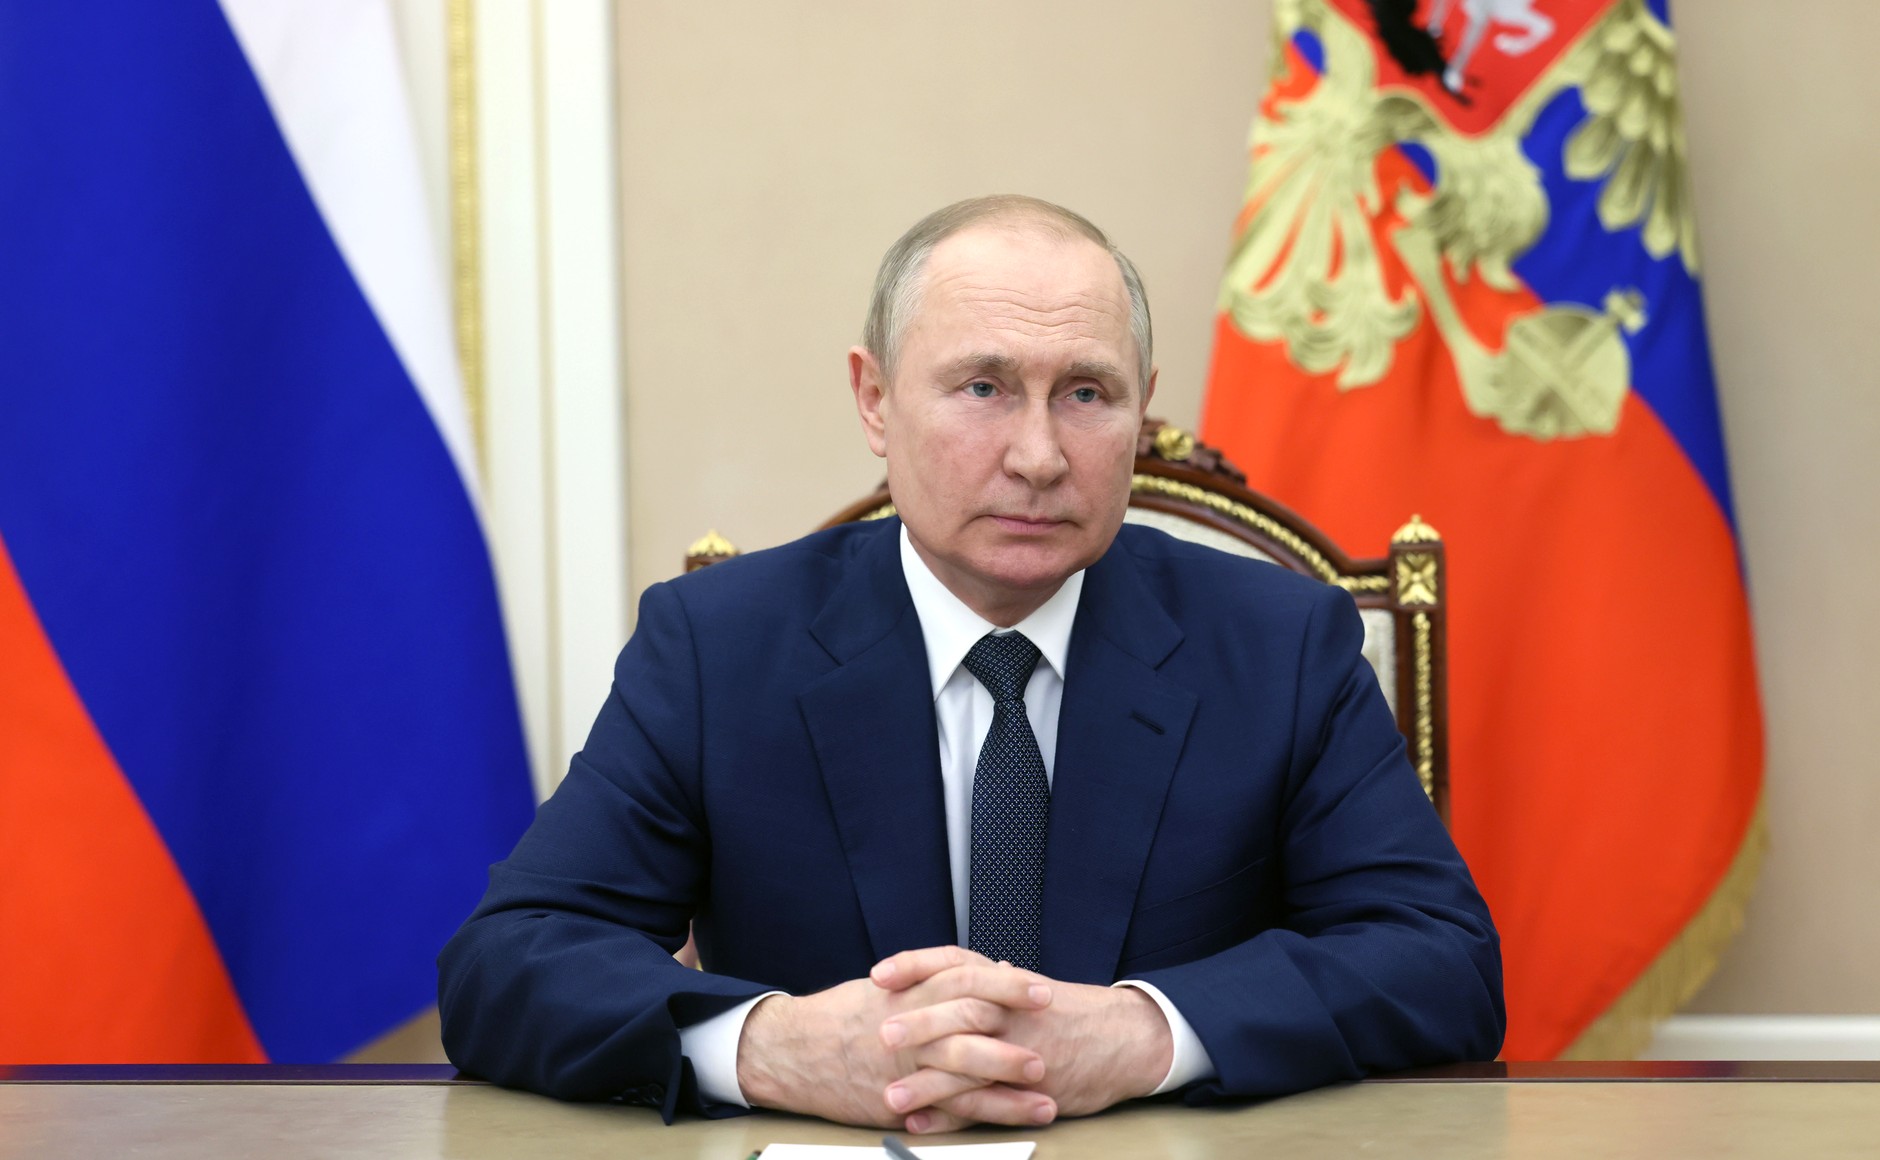 Владимир Путин: Союзное государство - пример по-настоящему взаимовыгодной и равноправной интеграции